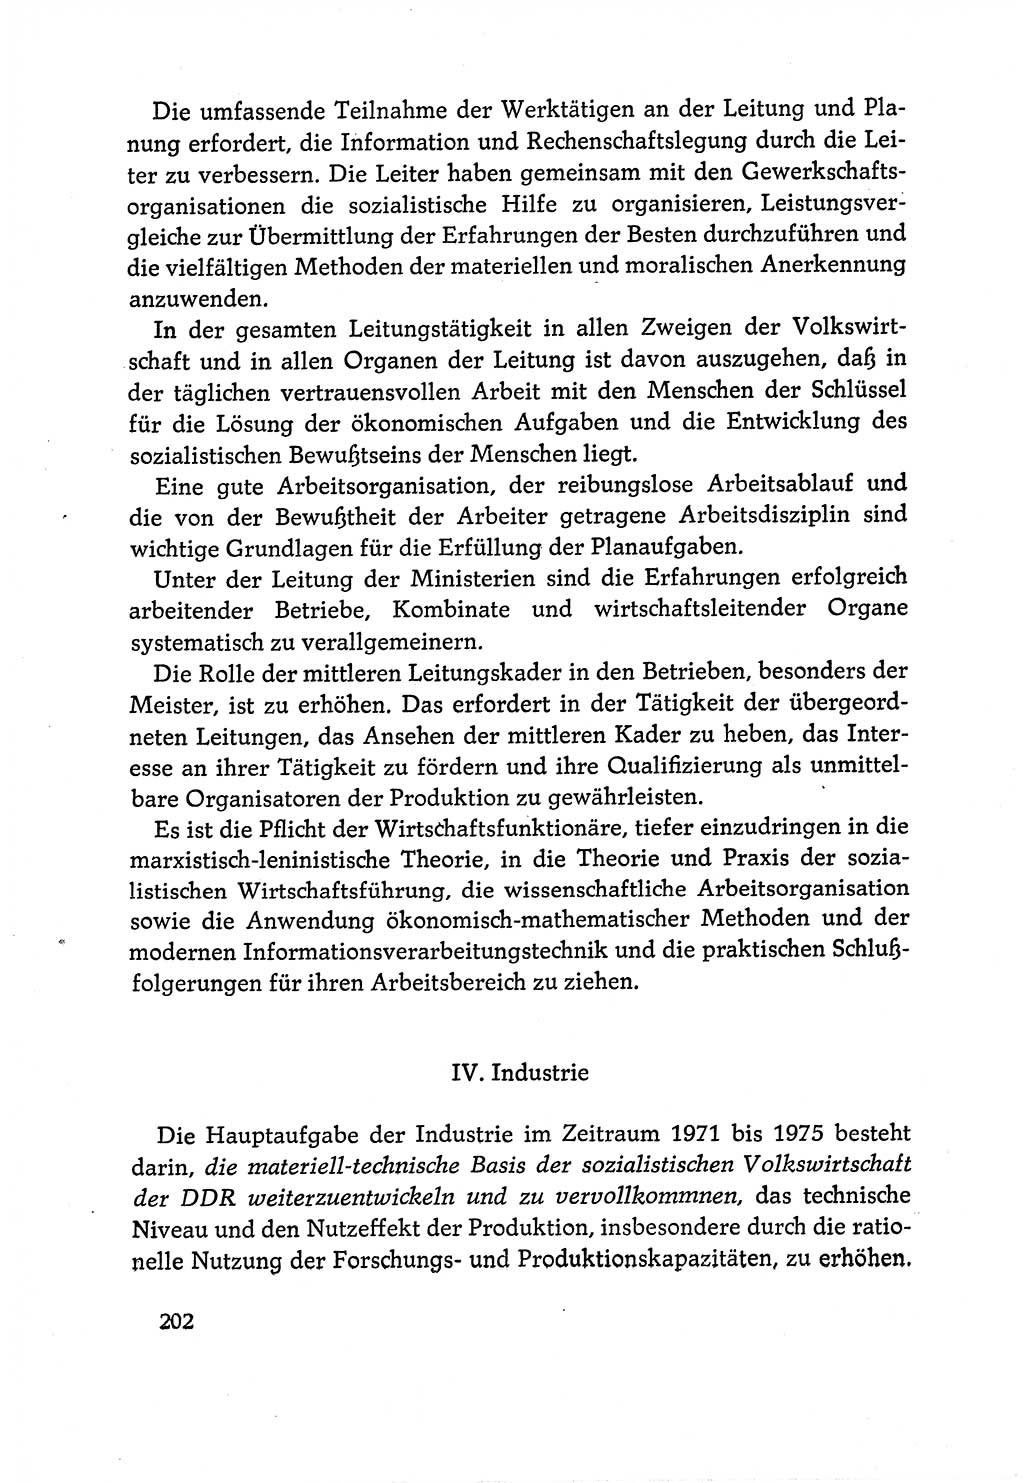 Dokumente der Sozialistischen Einheitspartei Deutschlands (SED) [Deutsche Demokratische Republik (DDR)] 1970-1971, Seite 202 (Dok. SED DDR 1970-1971, S. 202)